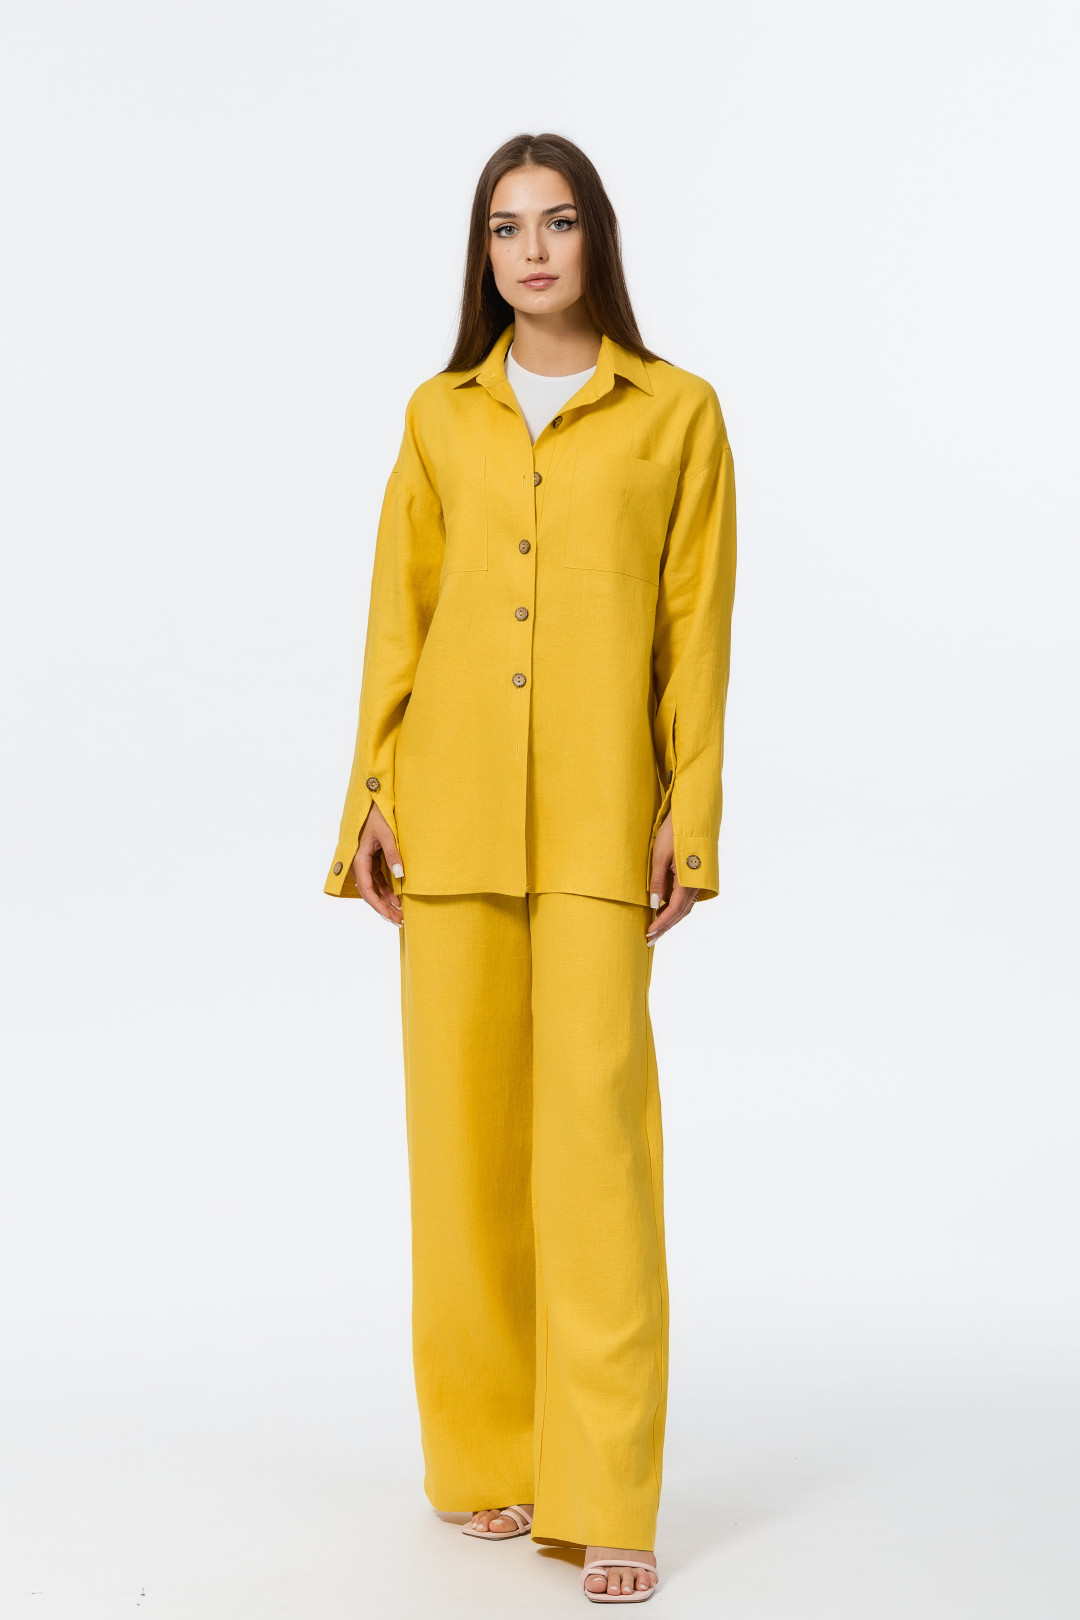 Рубашка ATELERO 1057 желто-горчичный